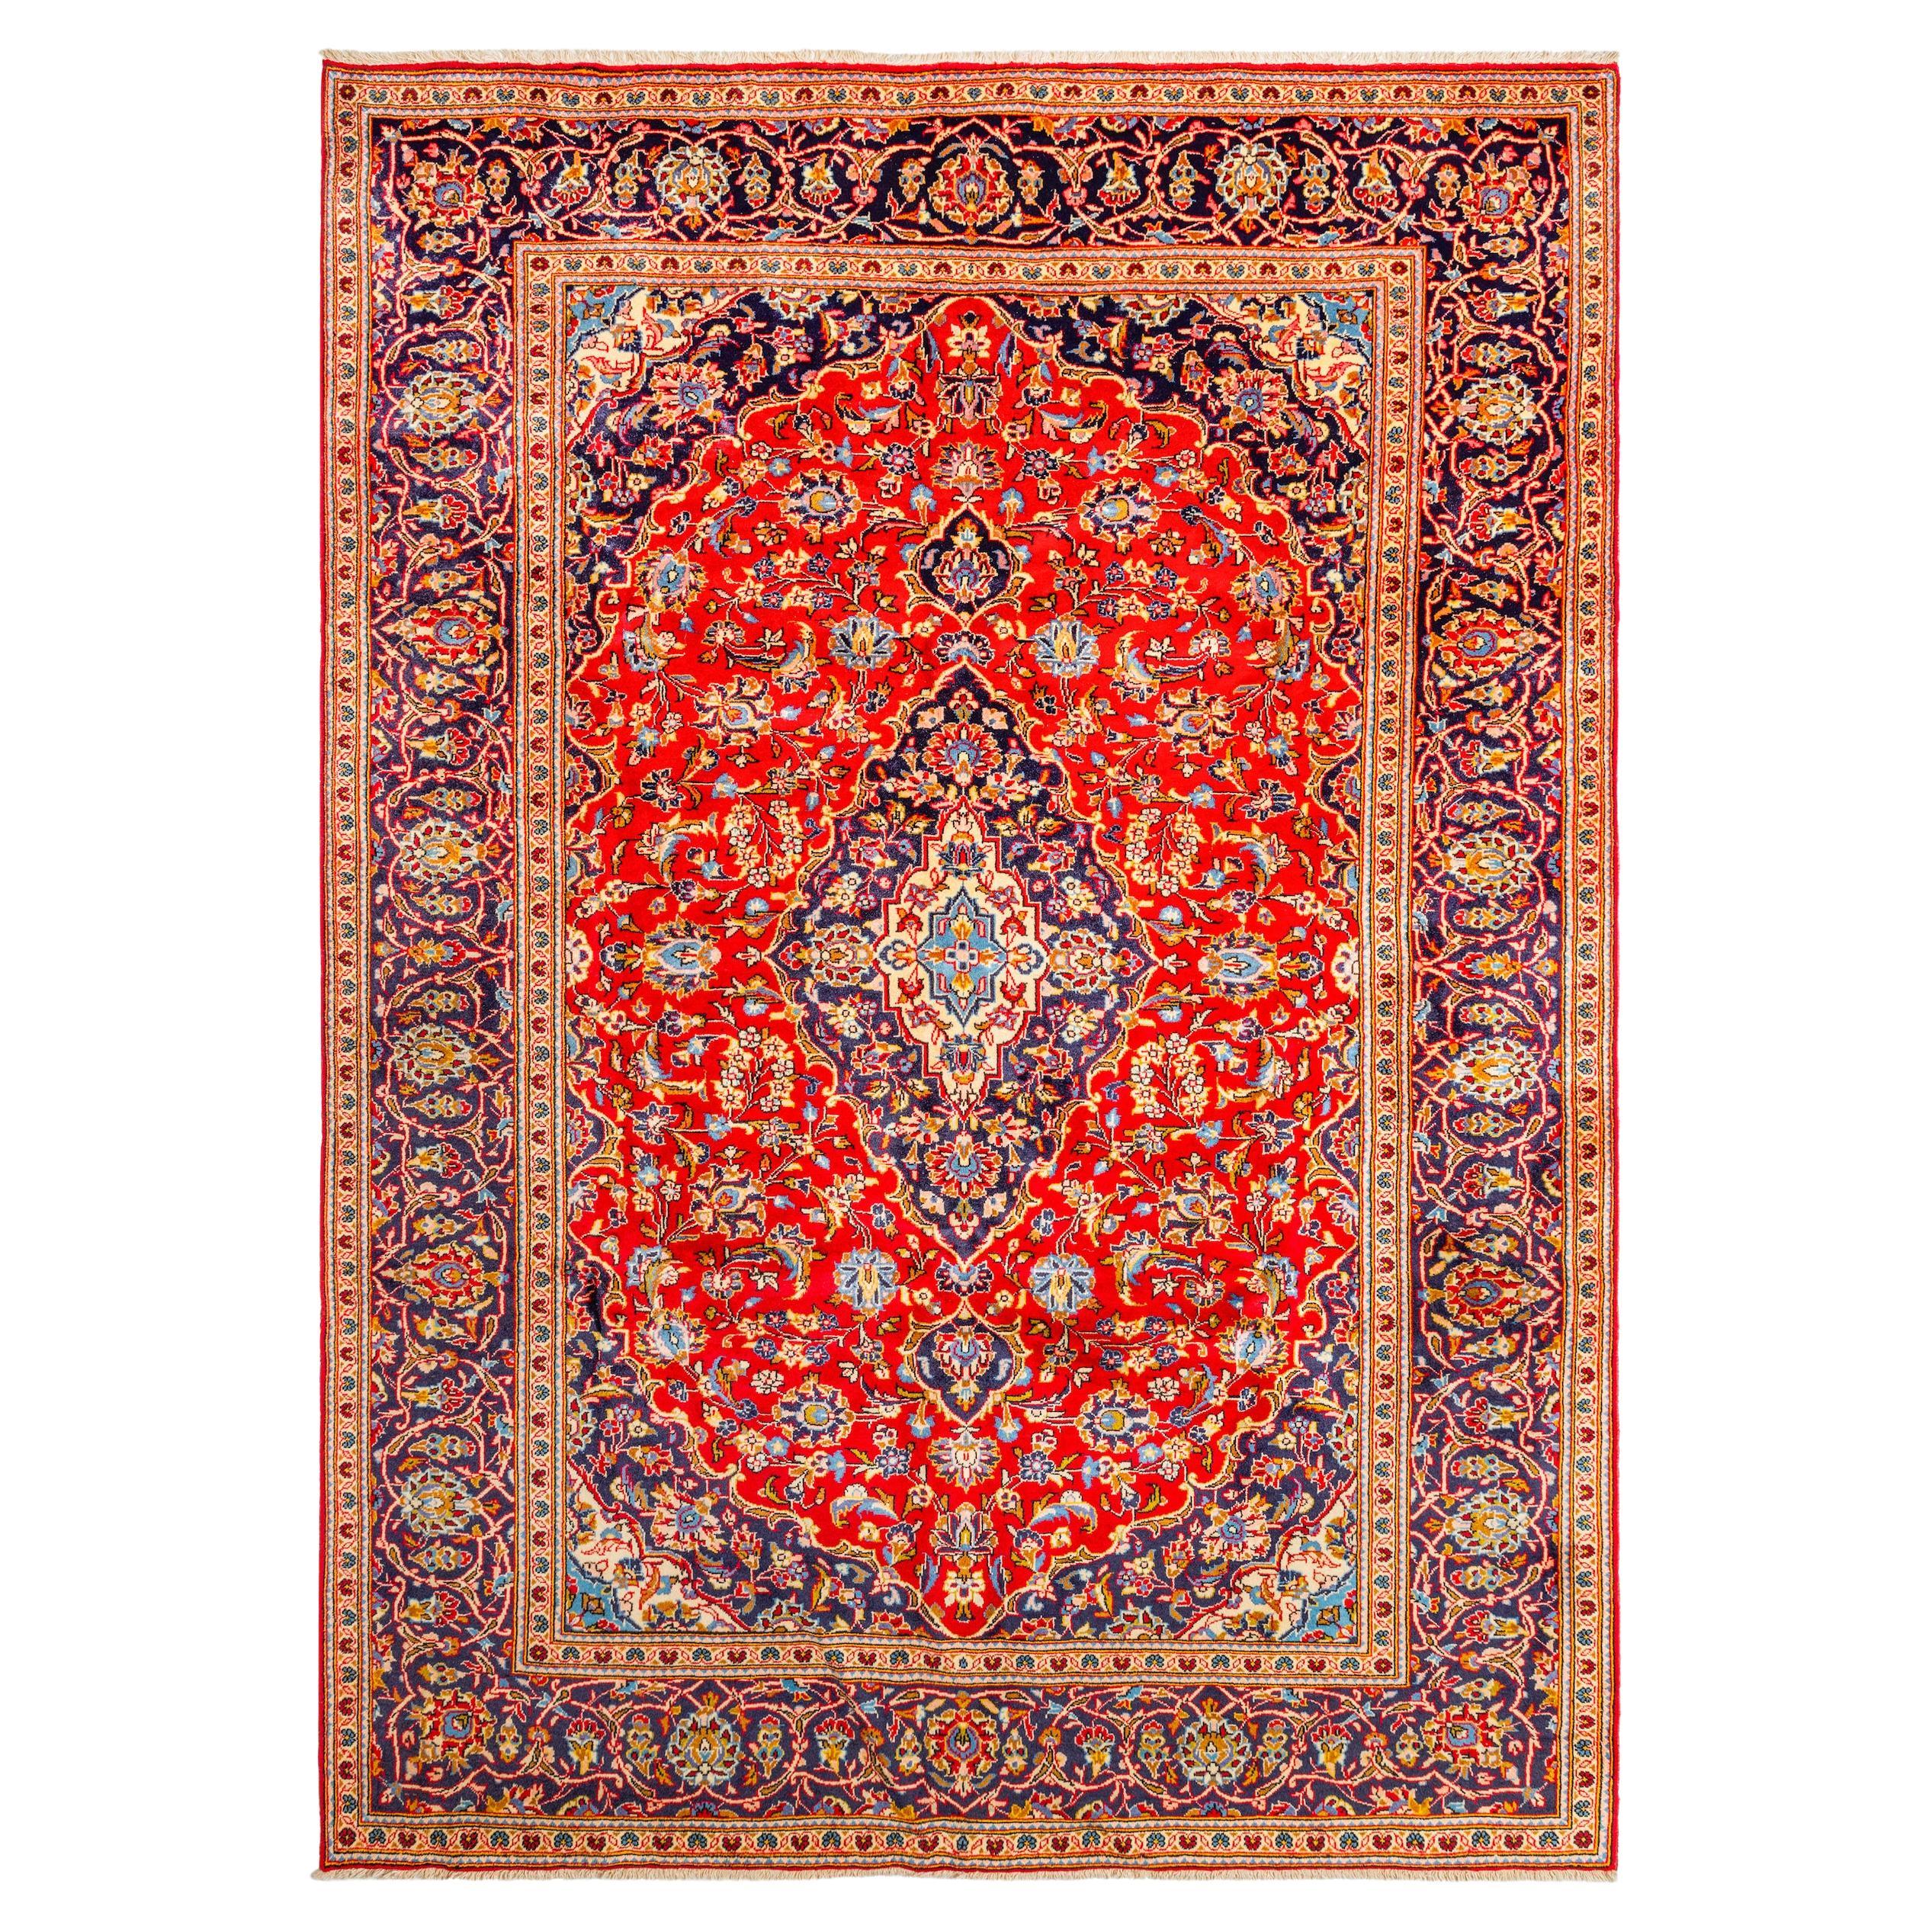 Authentique tapis persan rouge à fleurs 9' 3" x 6' 9"